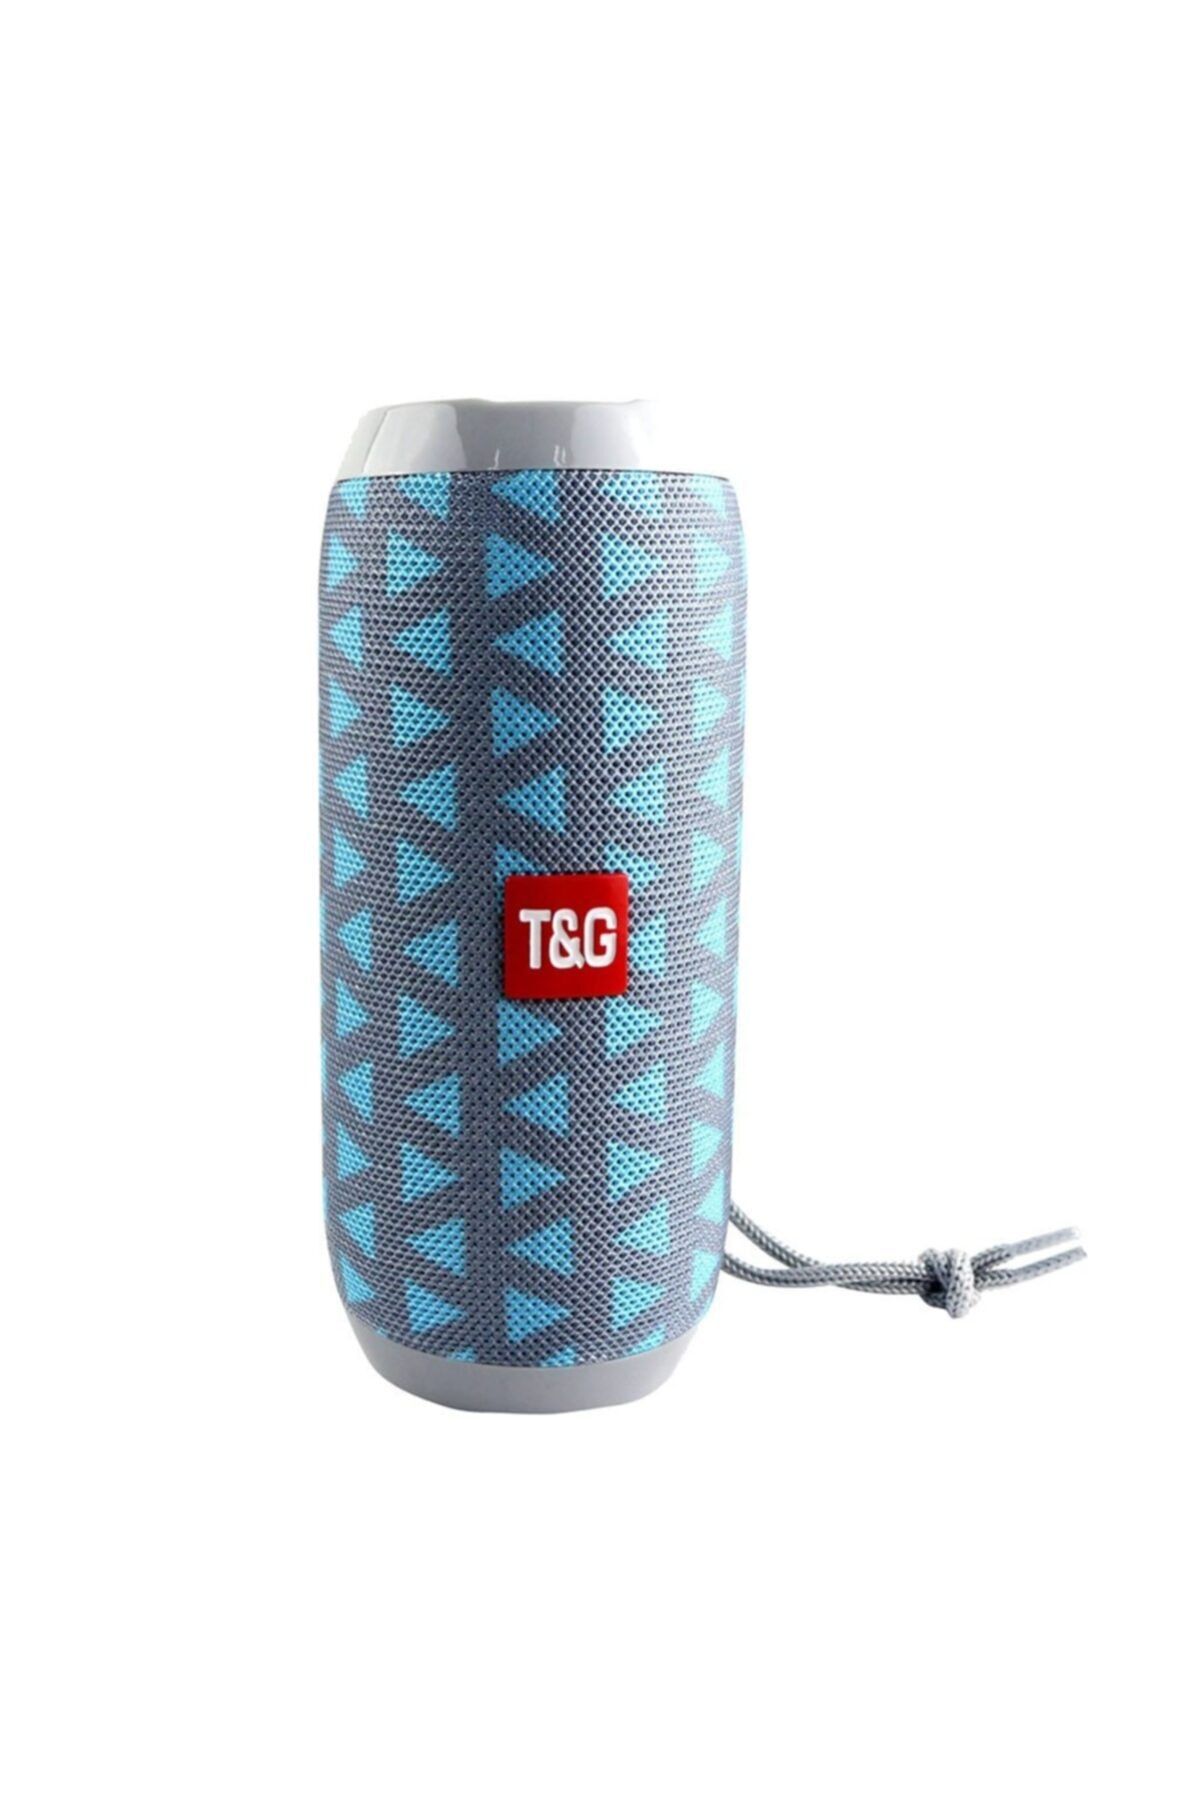 T G T&g Kablosuz Taşınabilir Bluetooth Hoparlör Ses Bombası Extra Bass Bilgisayar Hoparlör Uygun